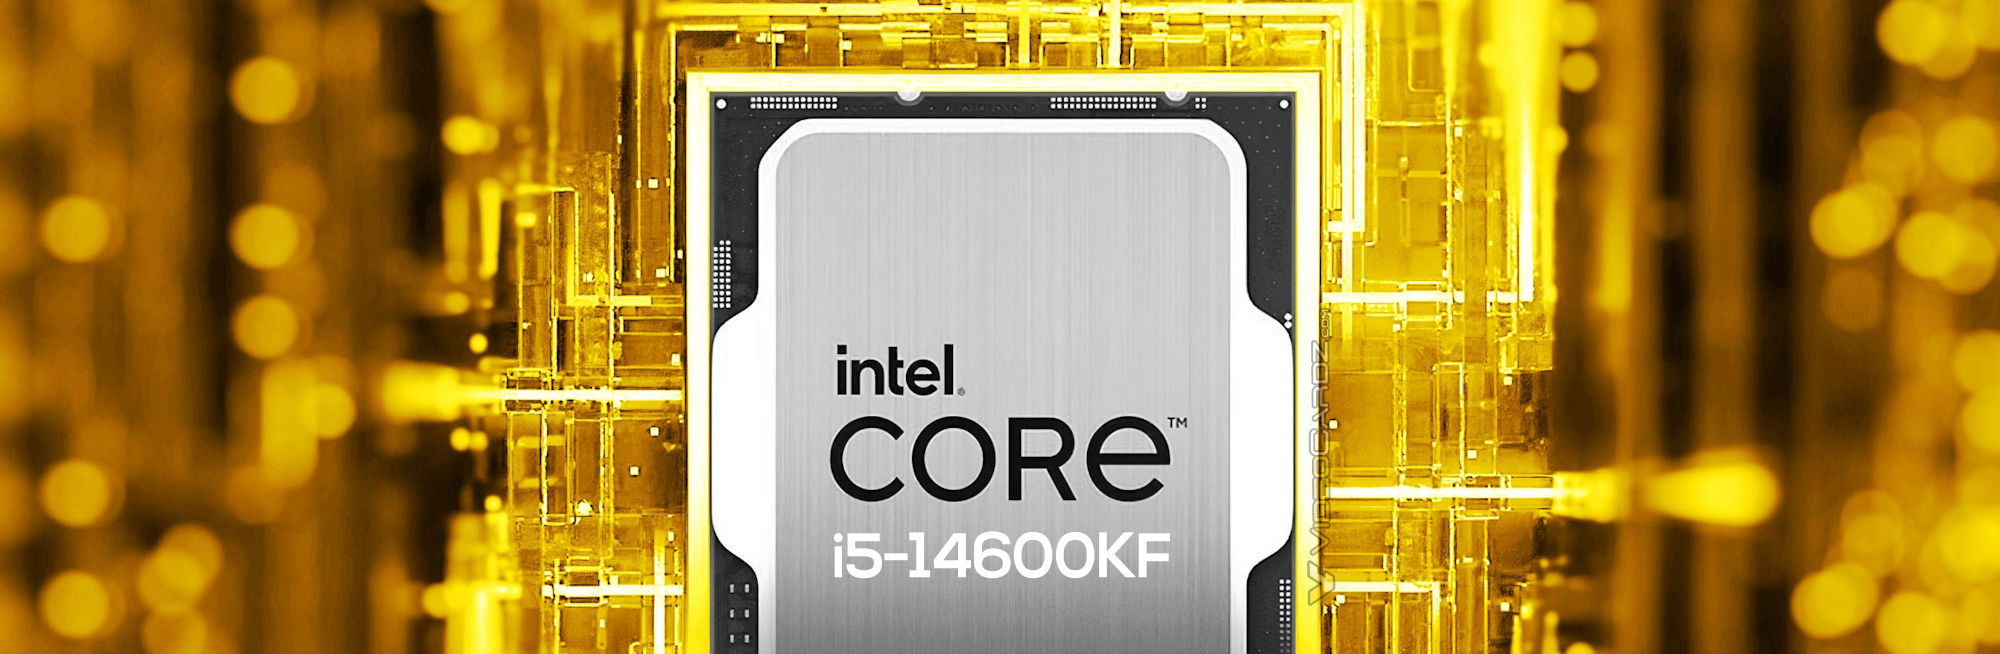 Intel Core i5-14600KF nhanh hơn 5.5% so với i5-13600K trong kết quả kiểm  tra single-core đầu tiên trên Geekbench